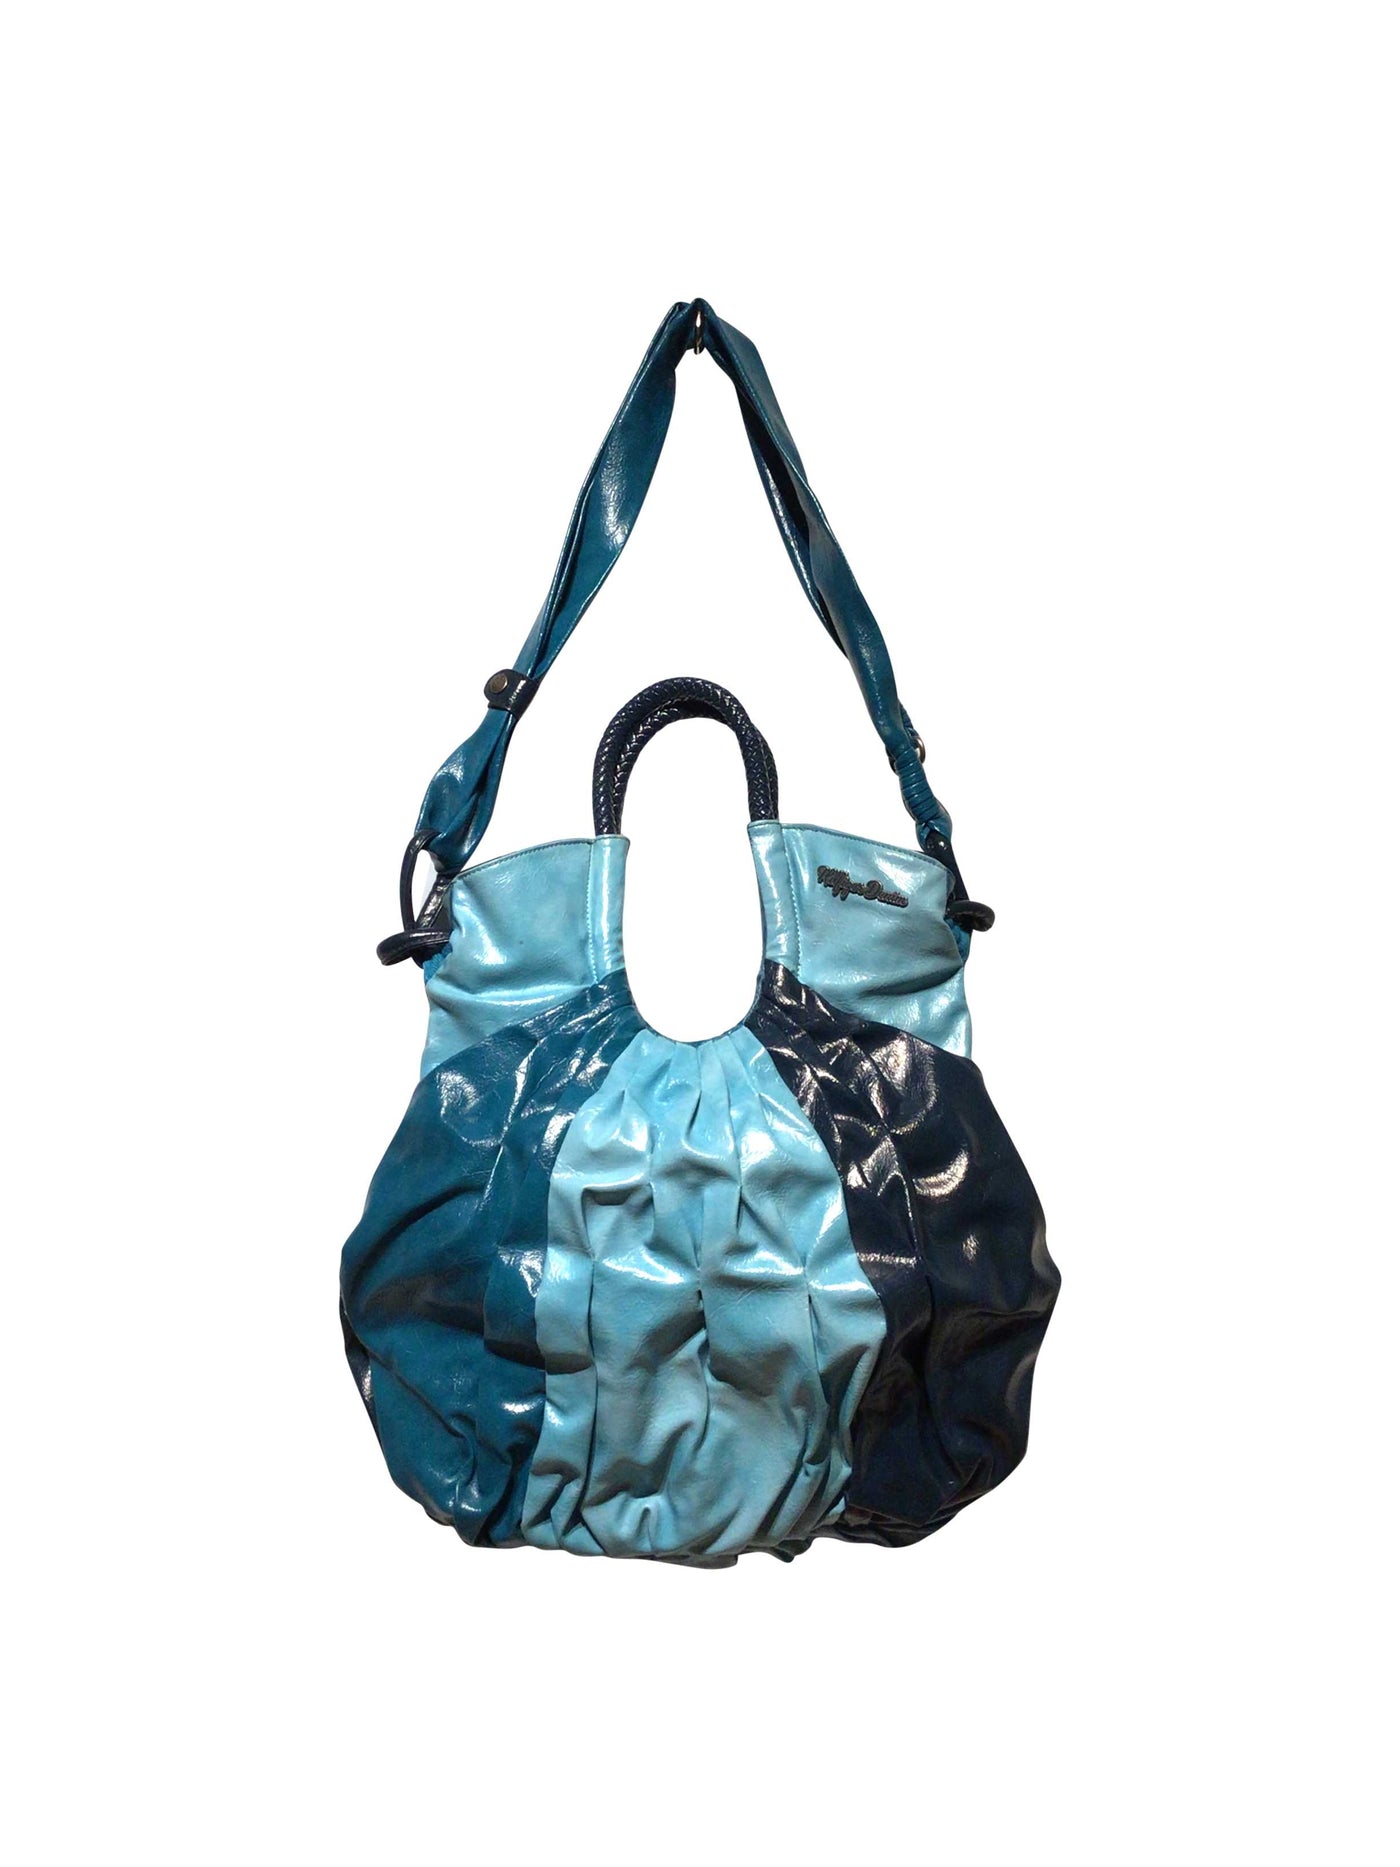 TOMMY HILFIGER Bag in Blue  -  S  24.99 Koop